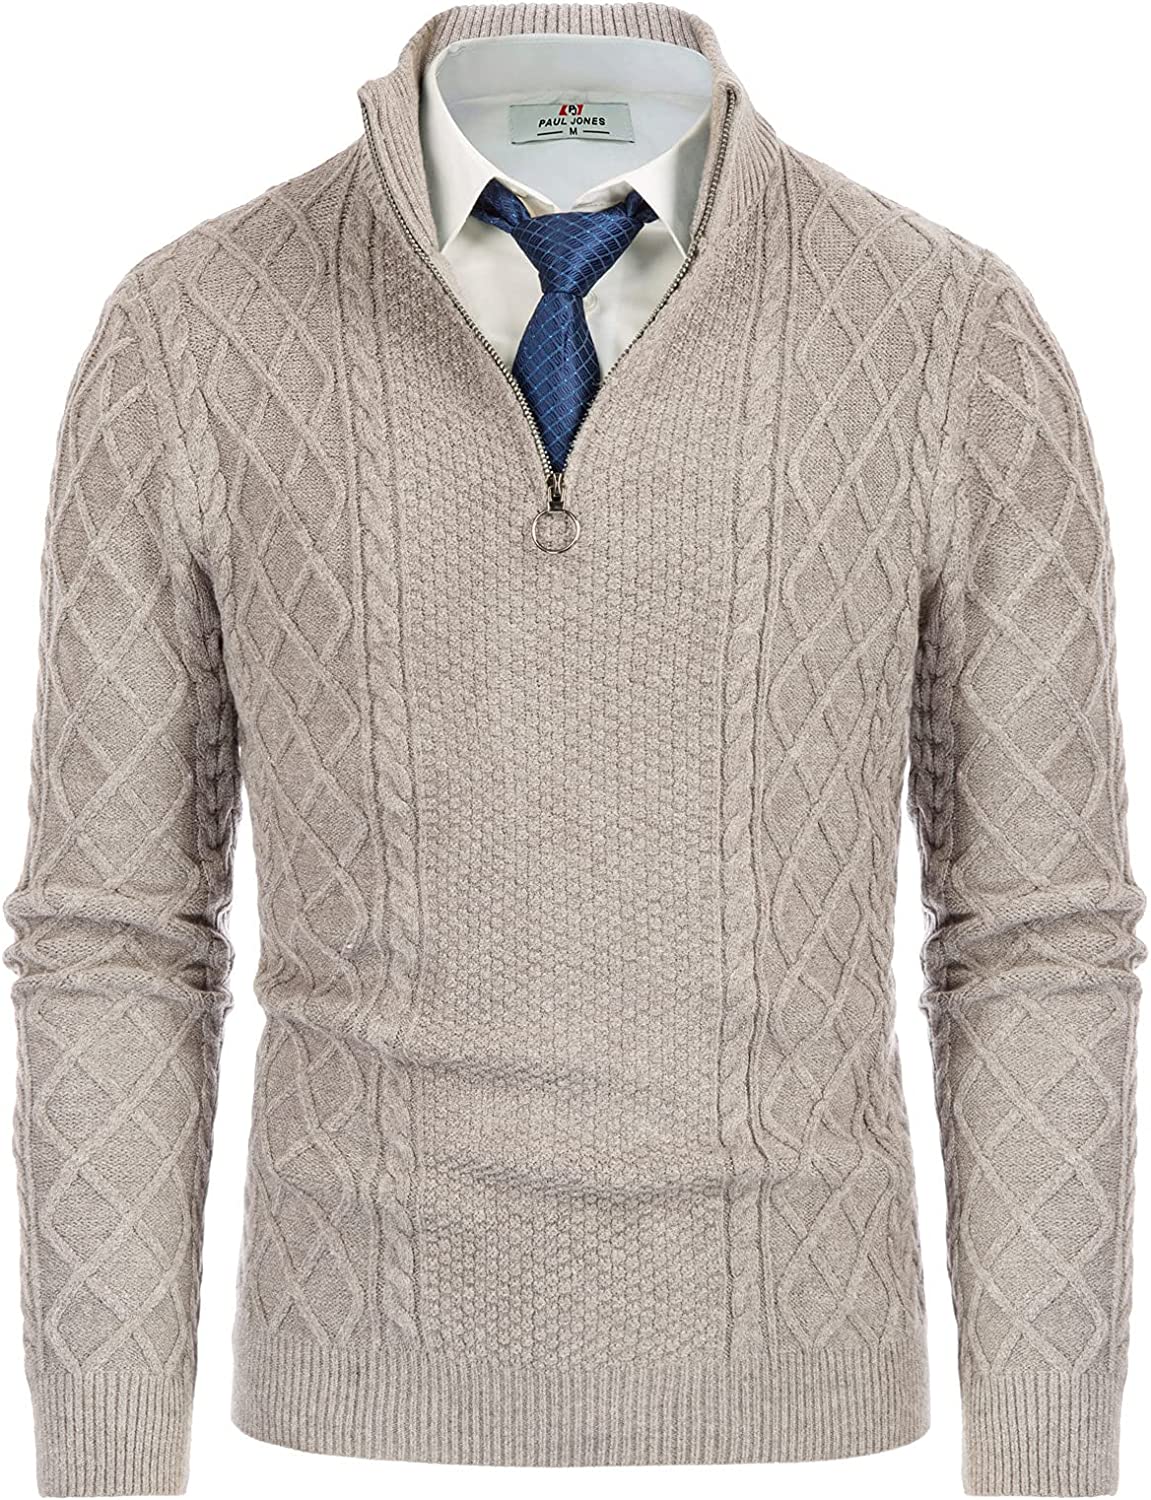 PJ Paul Jones Men's Casual Quarter-Zip Sweaters Cable Knit Thermal